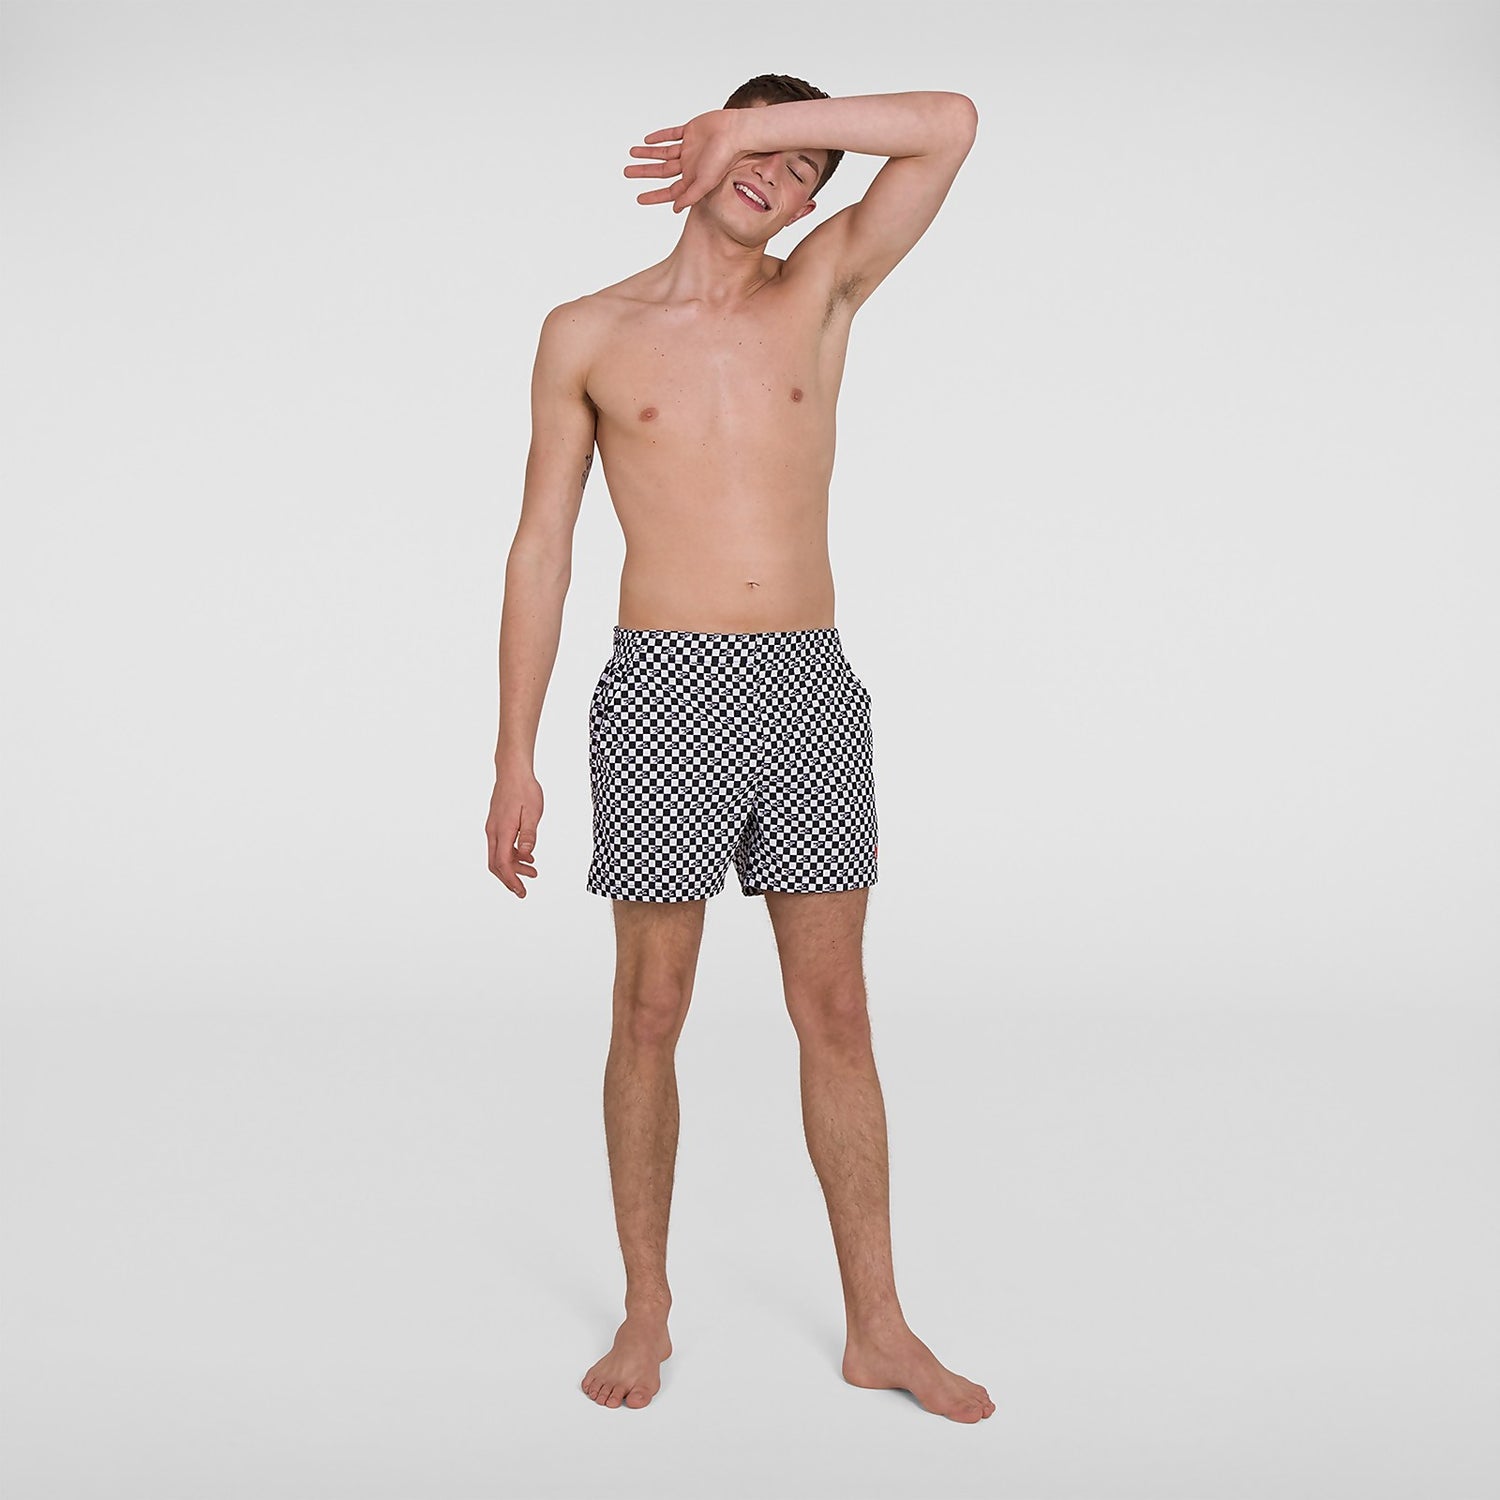 Details about   New Speedo Vintage Contrast Mens 14" Swim Shorts Sz L XL 2XL leisure beach ST 